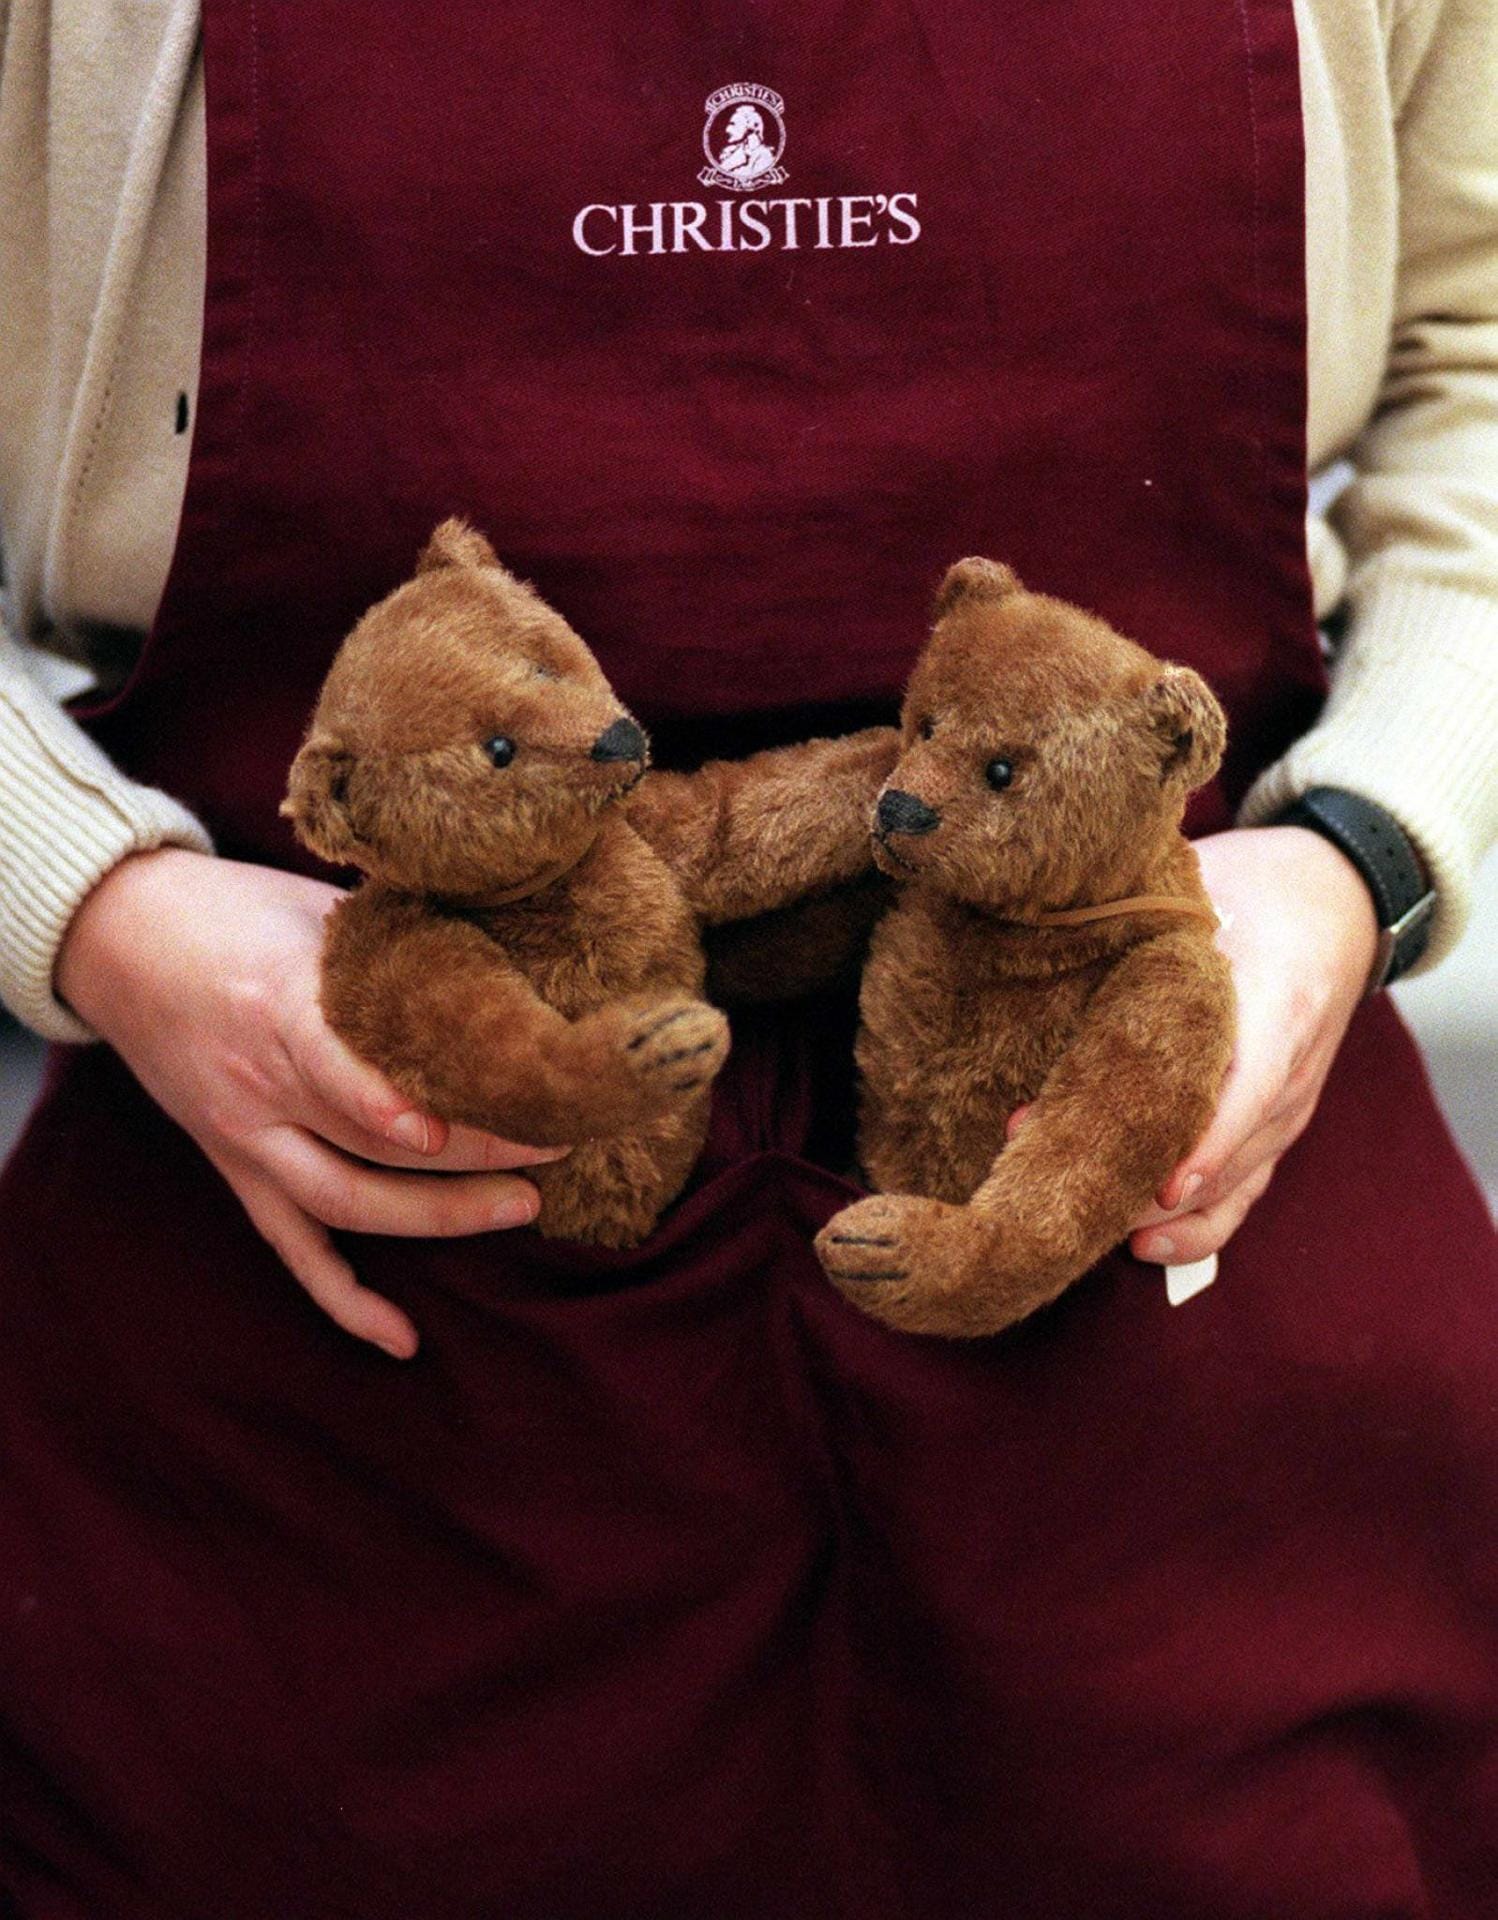 Auch diese Steiff-Teddybären kommen bei Christie's unter den Hammer. Manche Stofftiere sind mehrere zehntausend Euro wert.